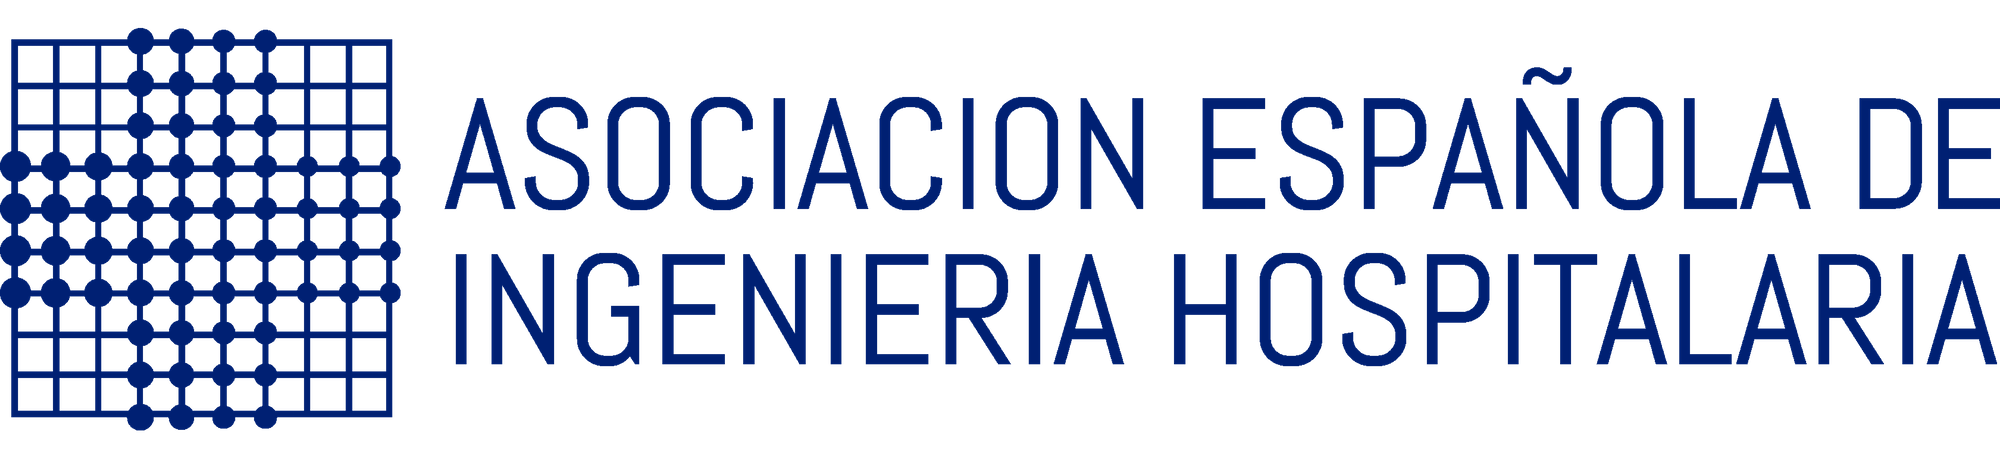 Asociación española de ingenieria hospitalaria